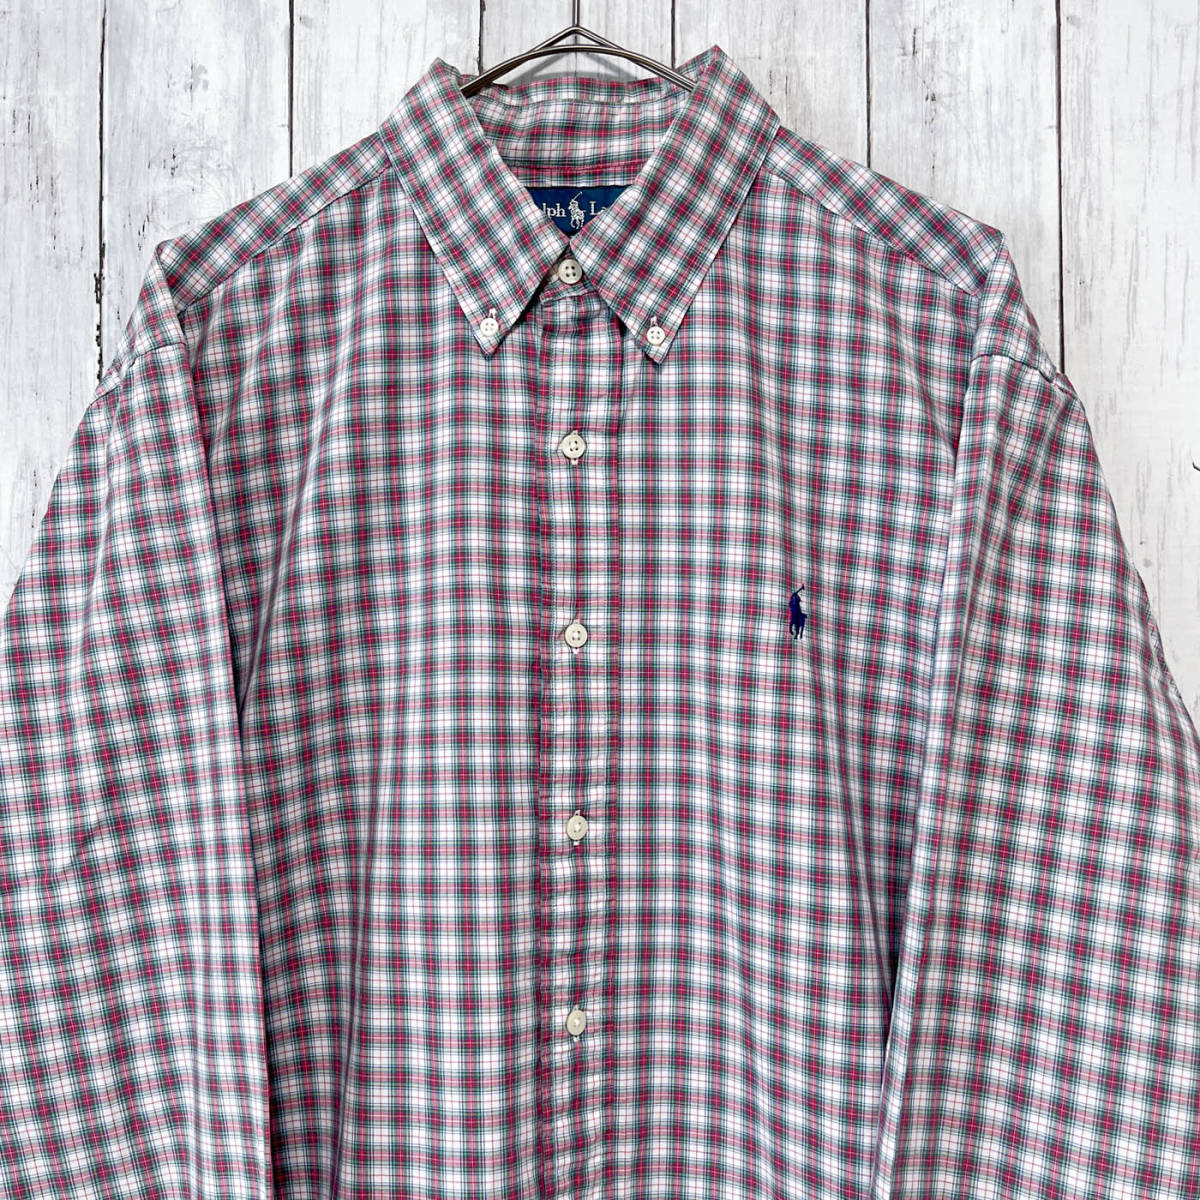 ラルフローレン Ralph Lauren CLASSIC FIT チェックシャツ 長袖シャツ メンズ ワンポイント コットン100% Lサイズ 3‐644の画像1